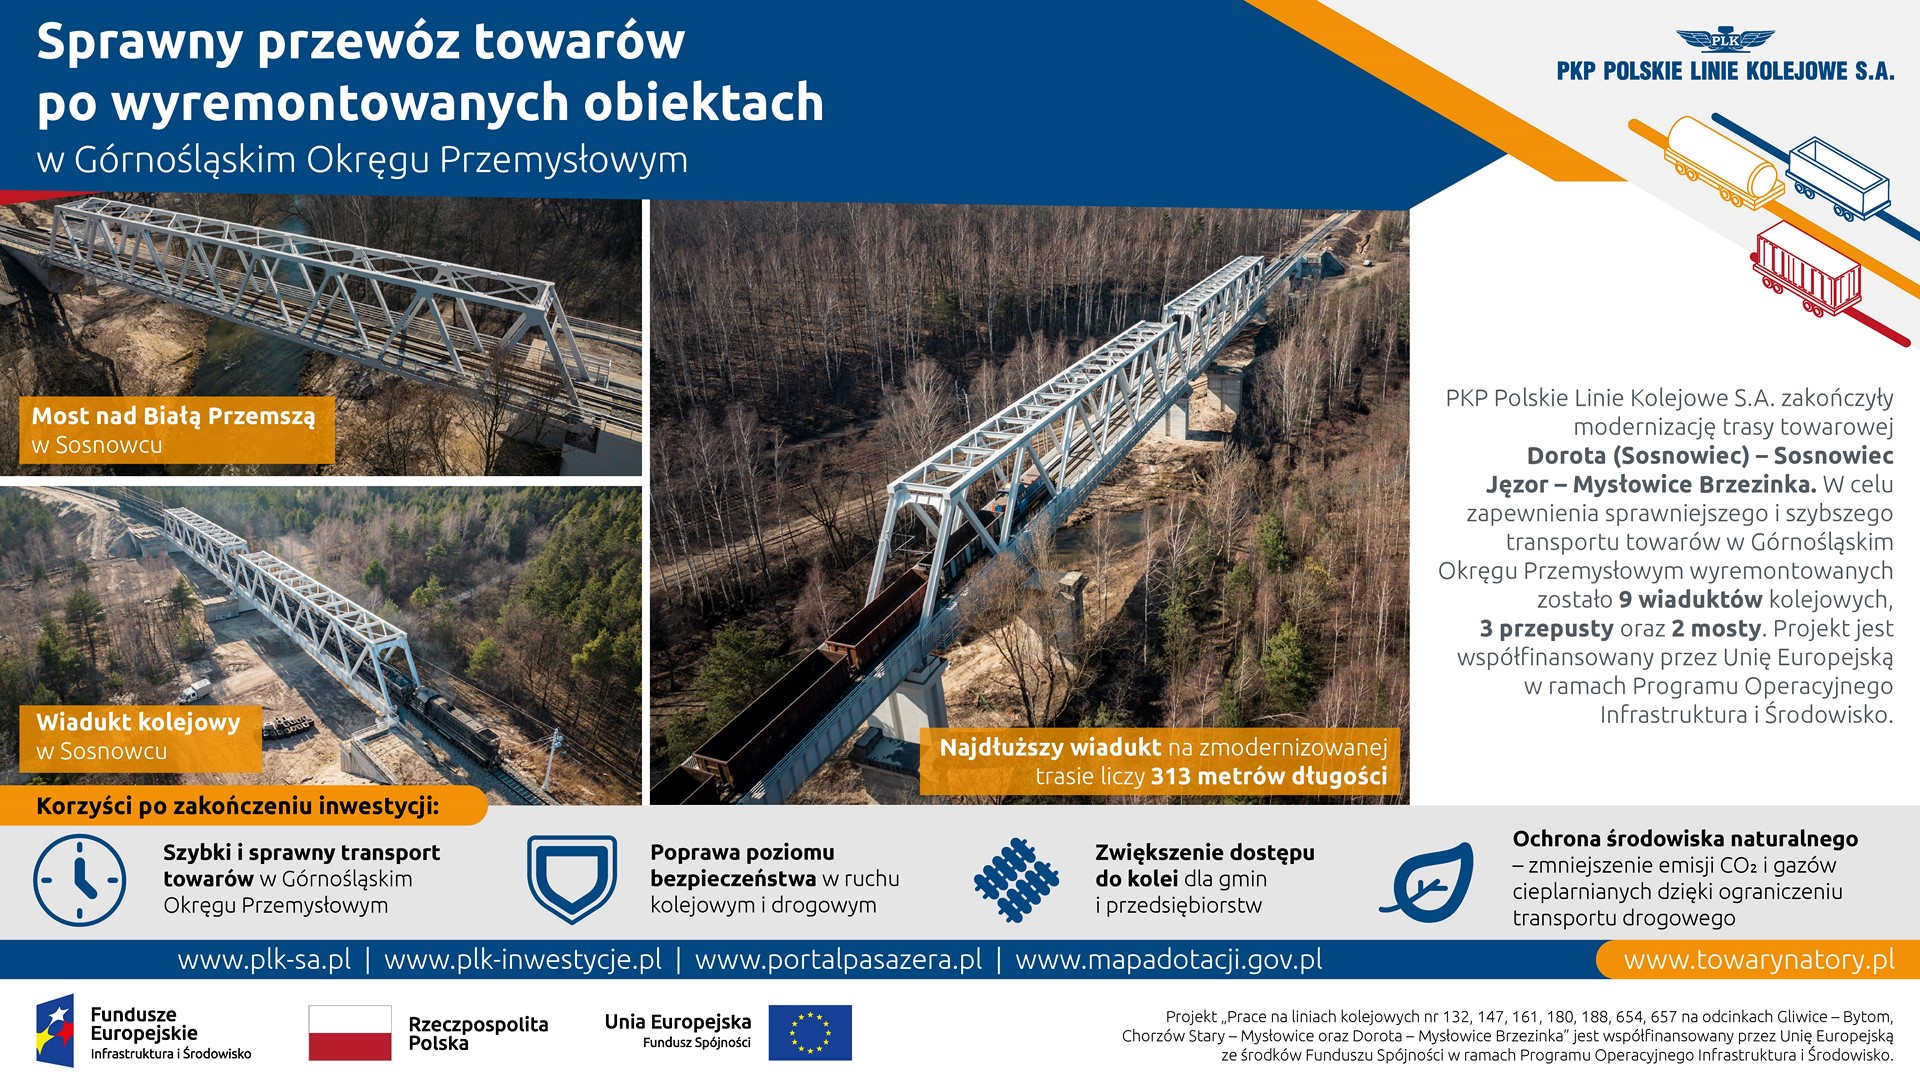 Infografika przedstawia kolaż 3 zdjęć obiektów. Pierwszym z nich jest Most nad Białą Przemszą w Sosnowcu. Drugim jest Wiadukt kolejowy w Sosnowcu. Trzecim i największym jest Najdłuższy wiadukt na zmodernizowanej trasie liczy 313 metrów długości.